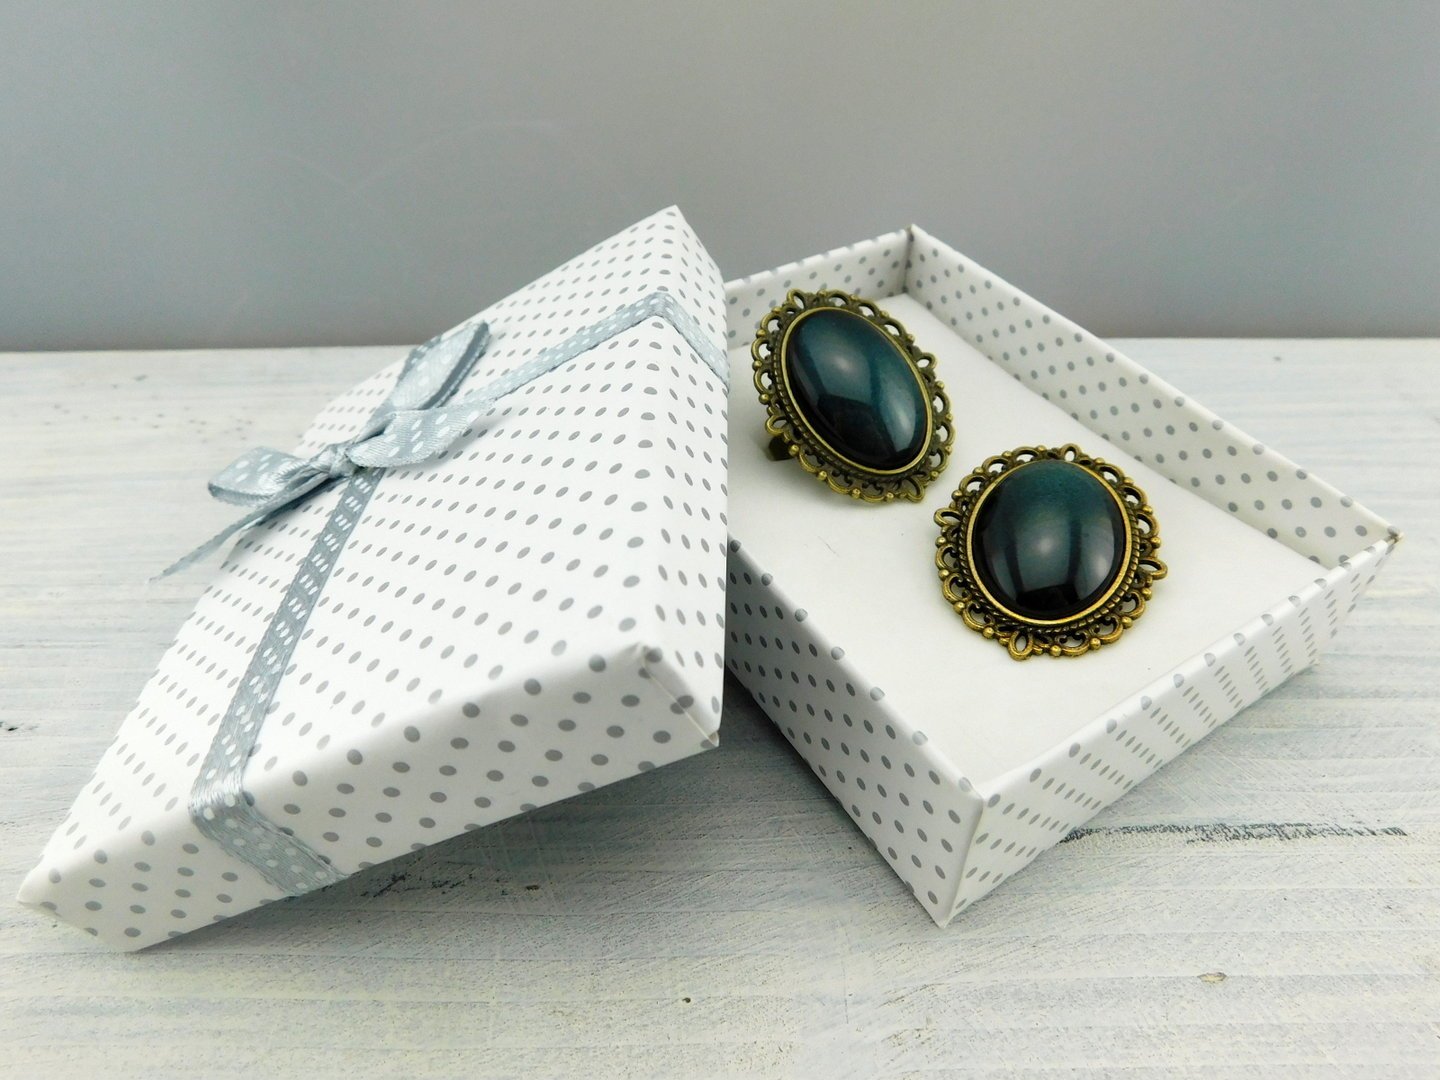 Geschenkset "Dunkler Smaragd" mit Ring und Brosche - Vintage Schmuckstübchen